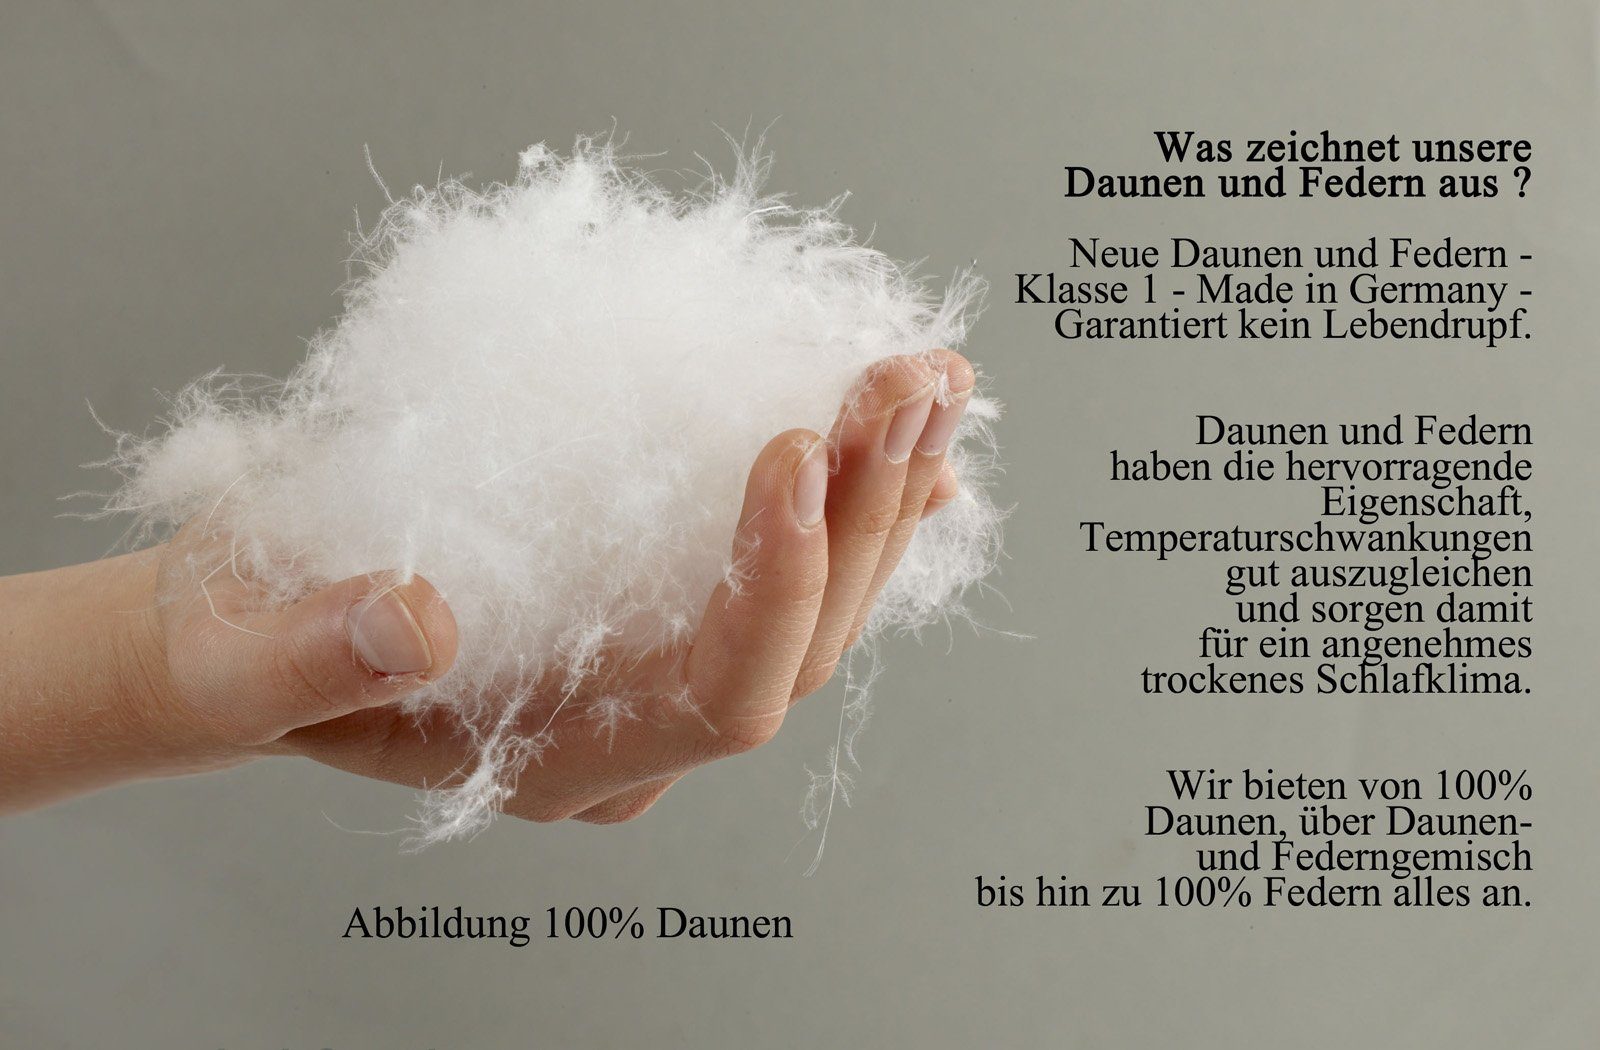 Daunenbettdecke, Franzi-3, 100% Daunen, Winter-Daunendecke Baumwolle, Bezug: leichte 100% extrawarme franknatur, Füllung